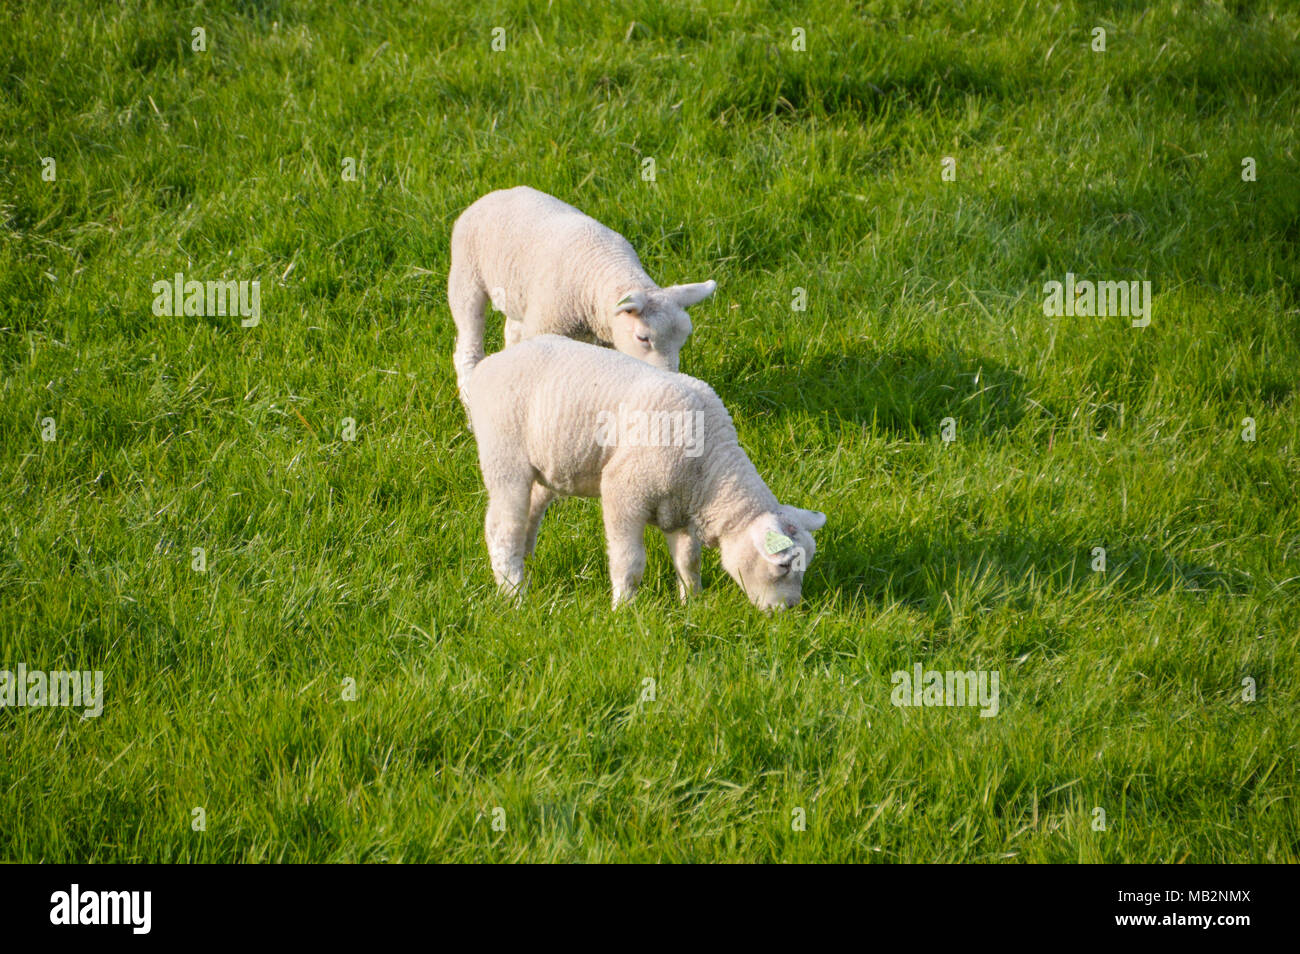 Los corderos comiendo hierba Foto de stock